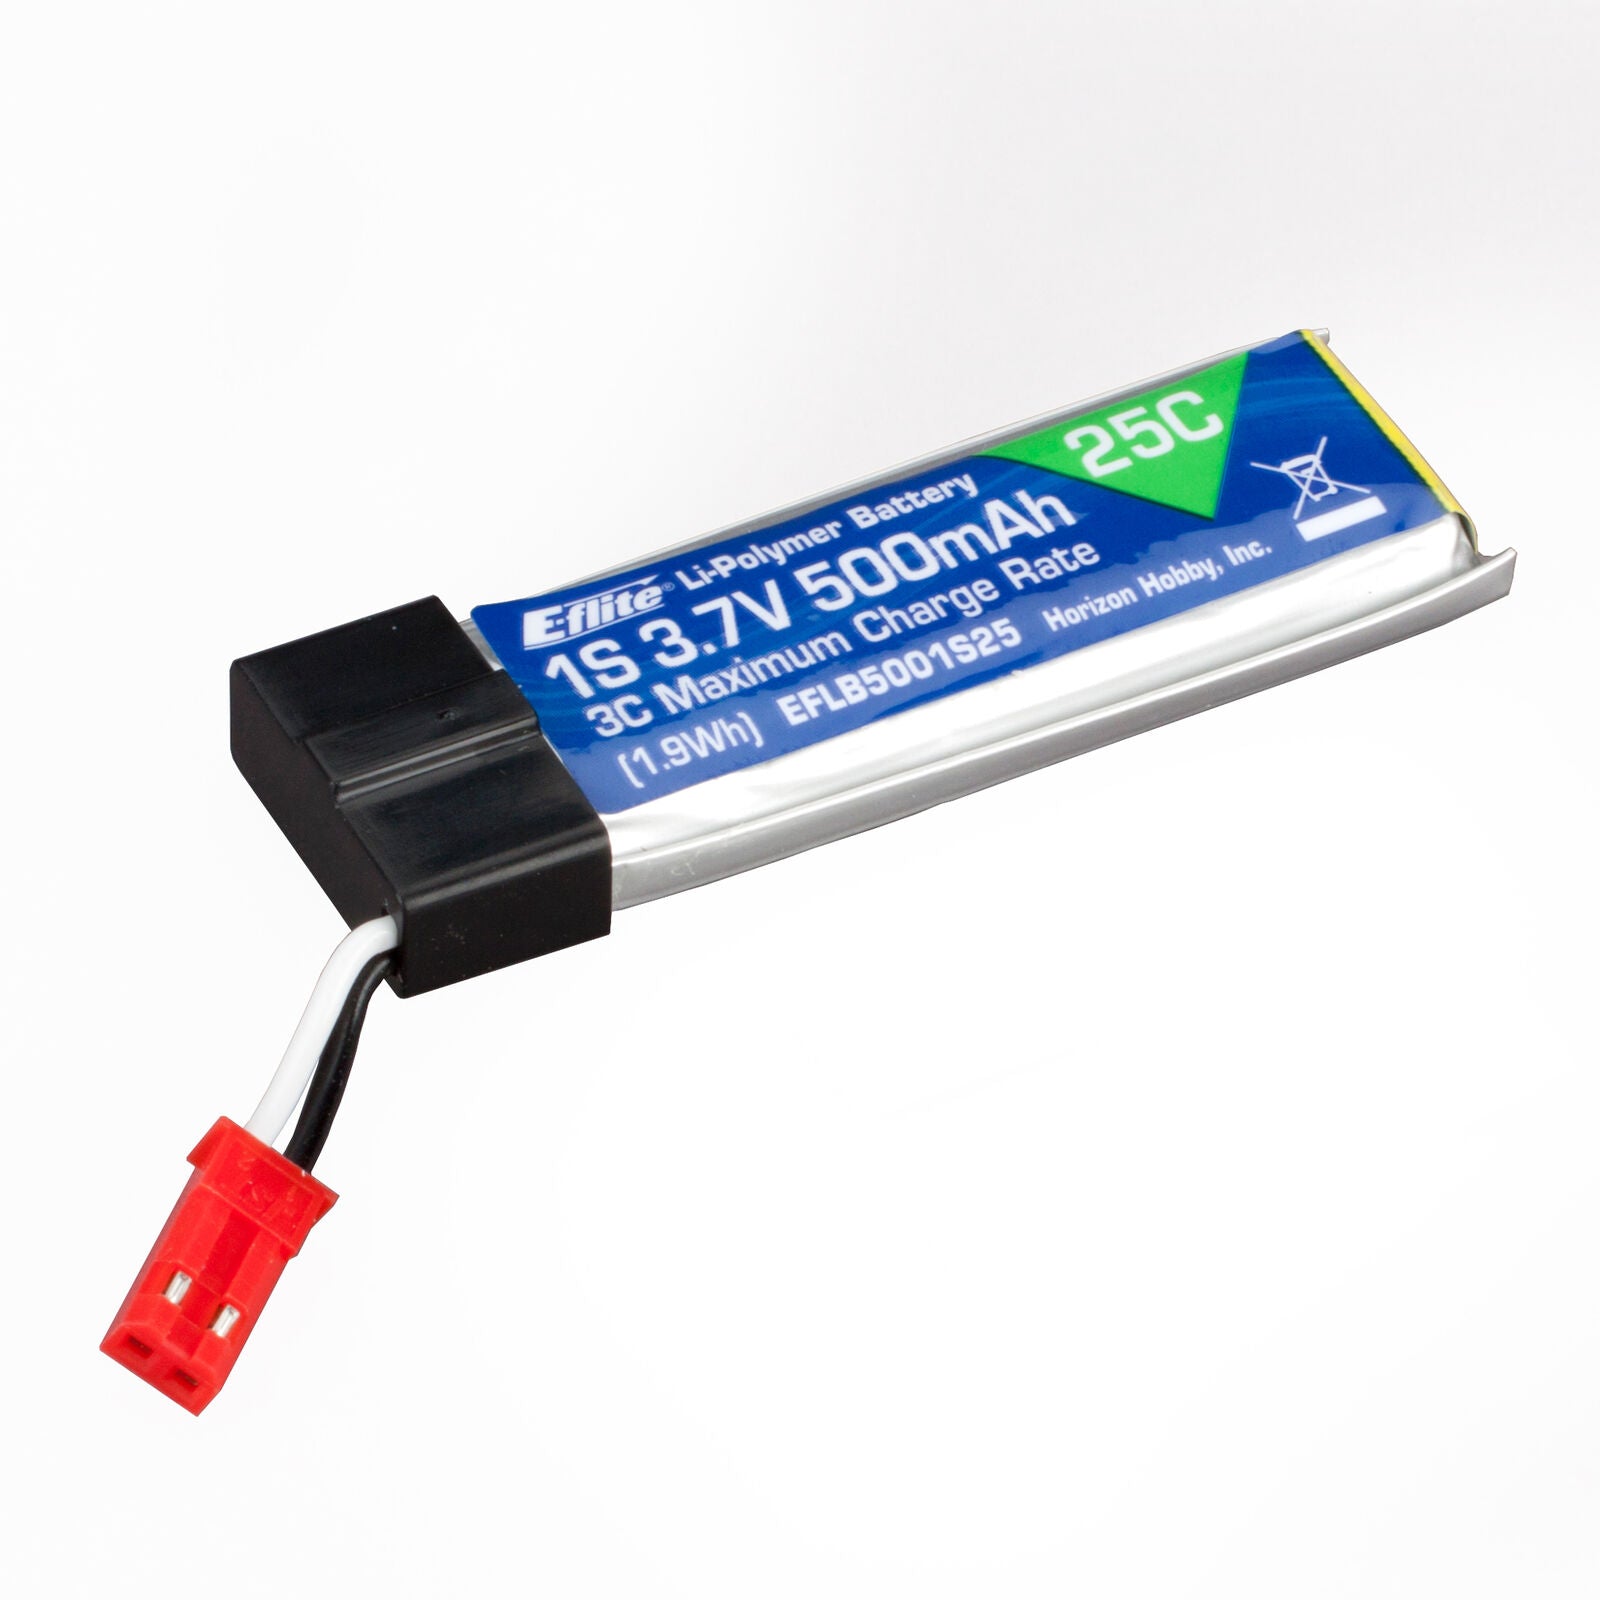 EFLITE EFLB5001S25 3.7V 500mAh 1S 25C LiPo Battery: JST